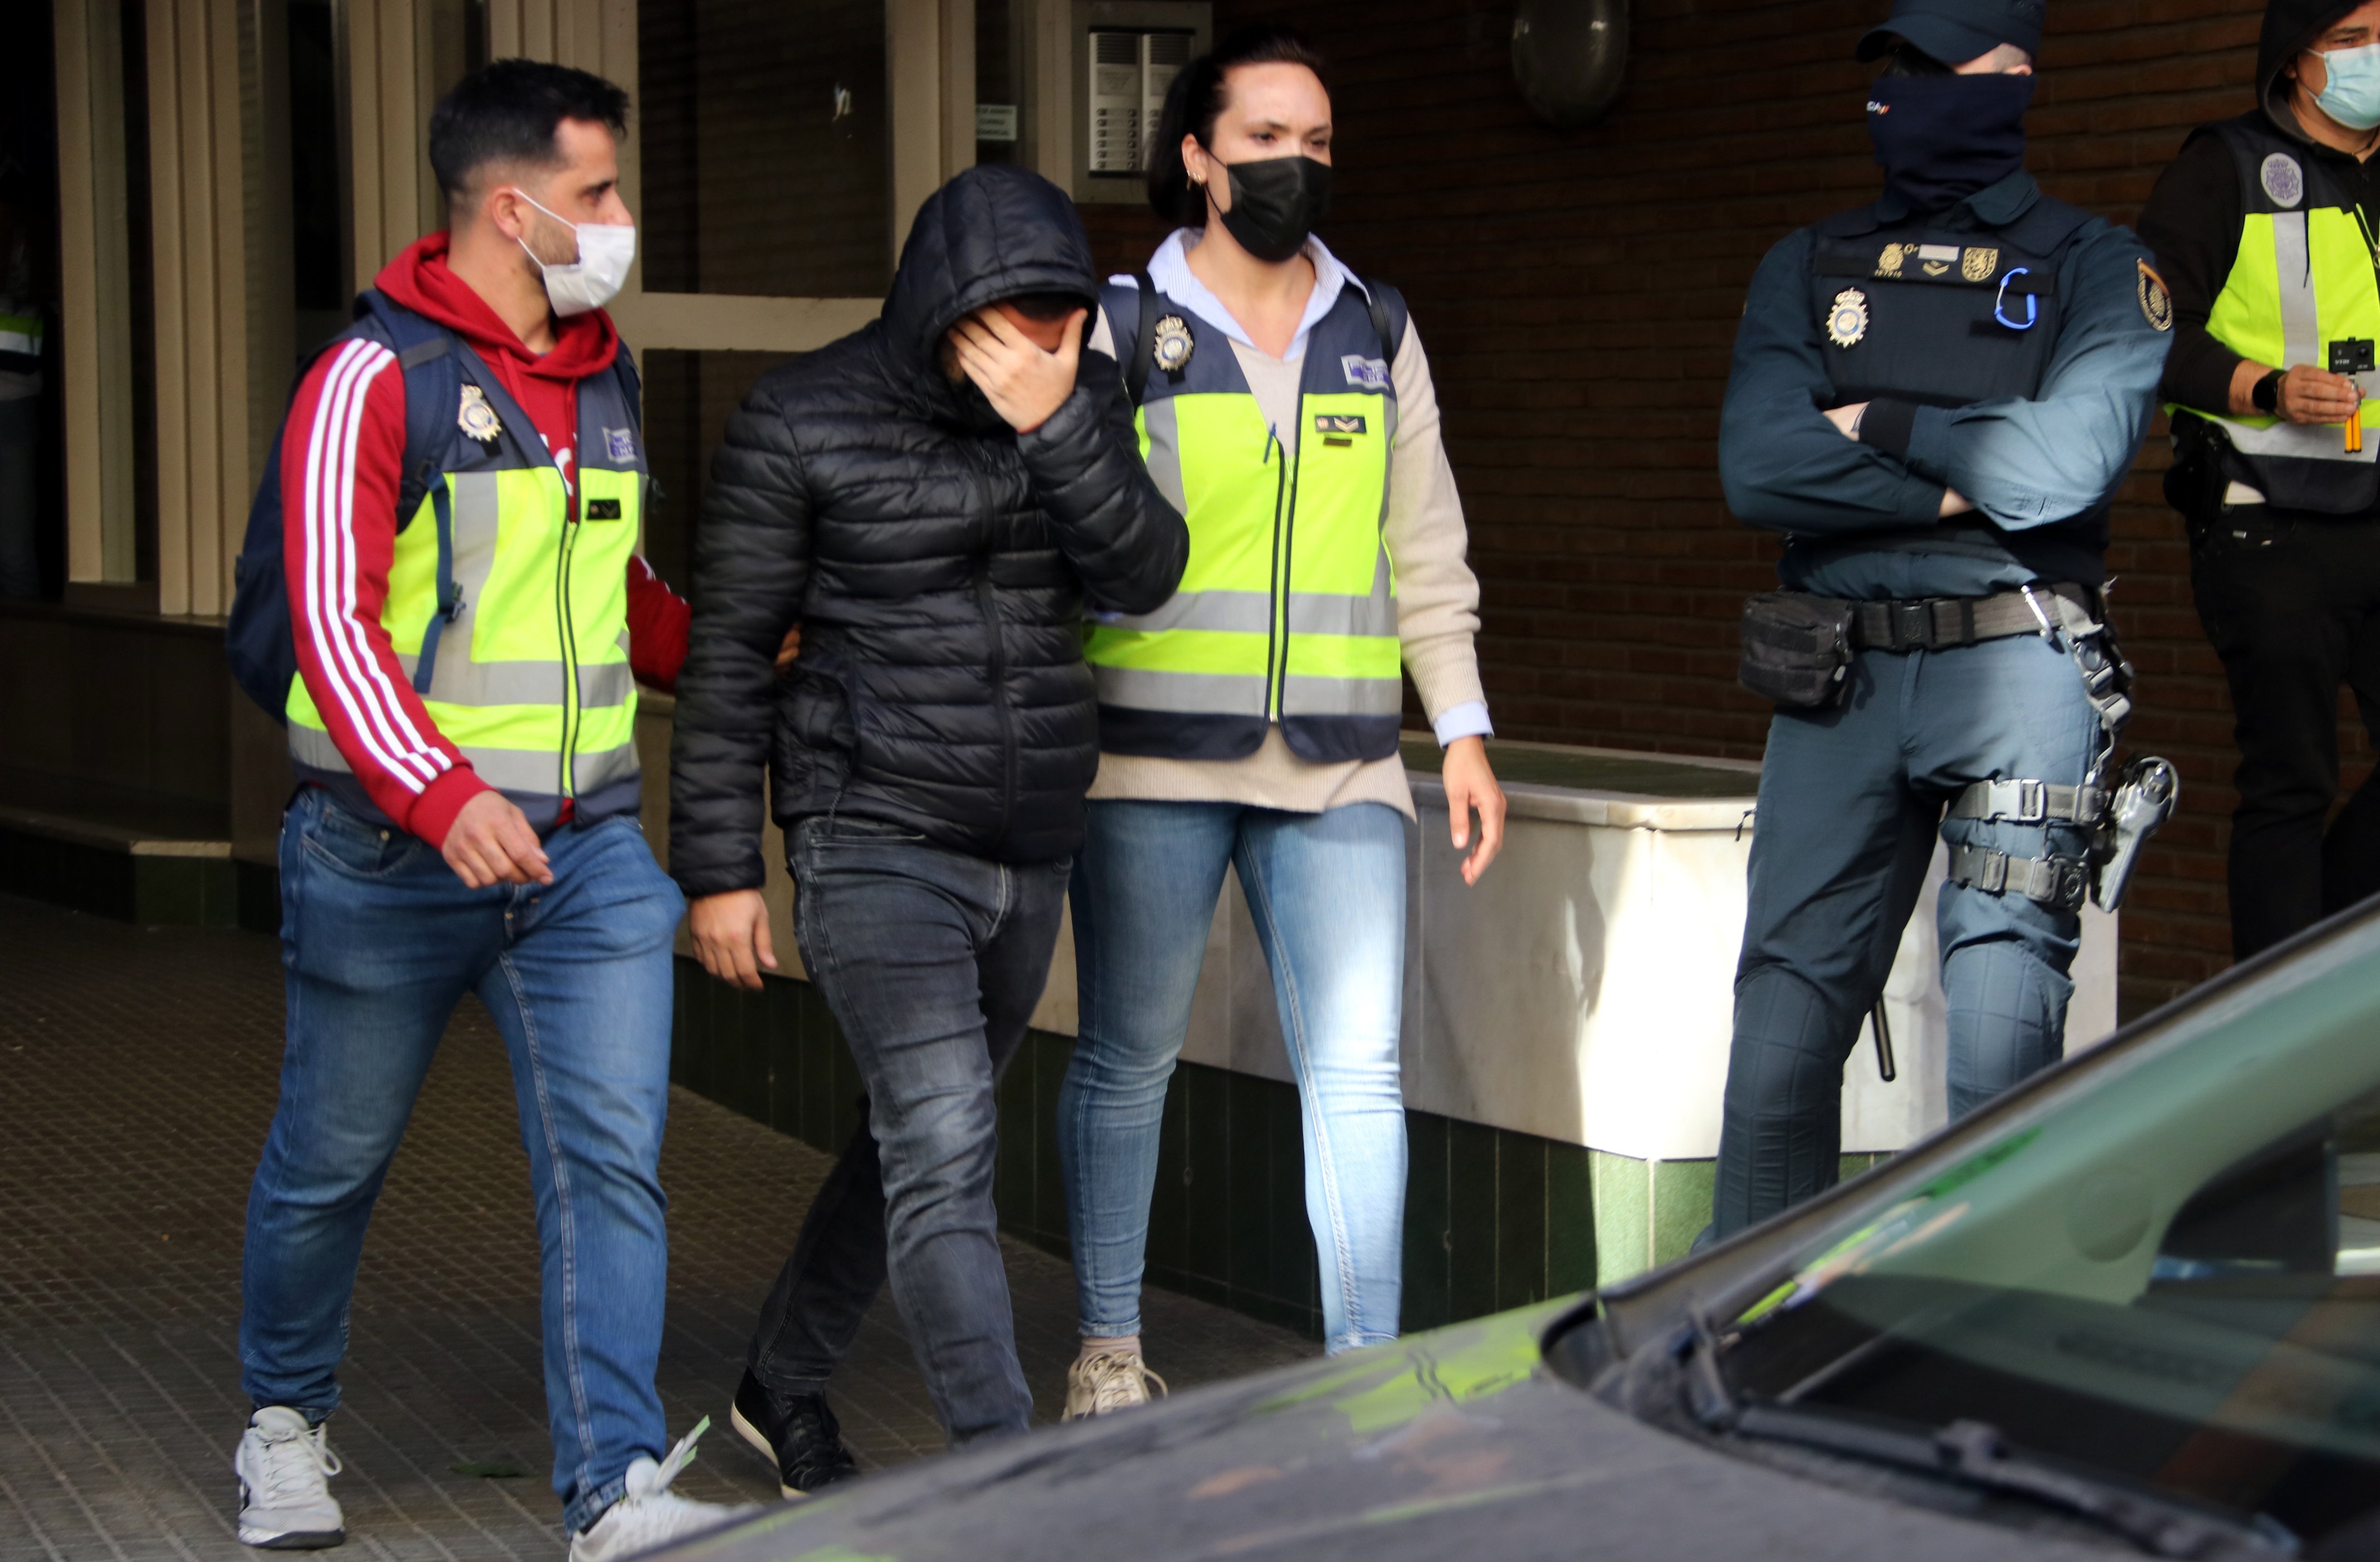 La policia deté cinc persones pel cas de corrupció a l'Ajuntament de Cornellà